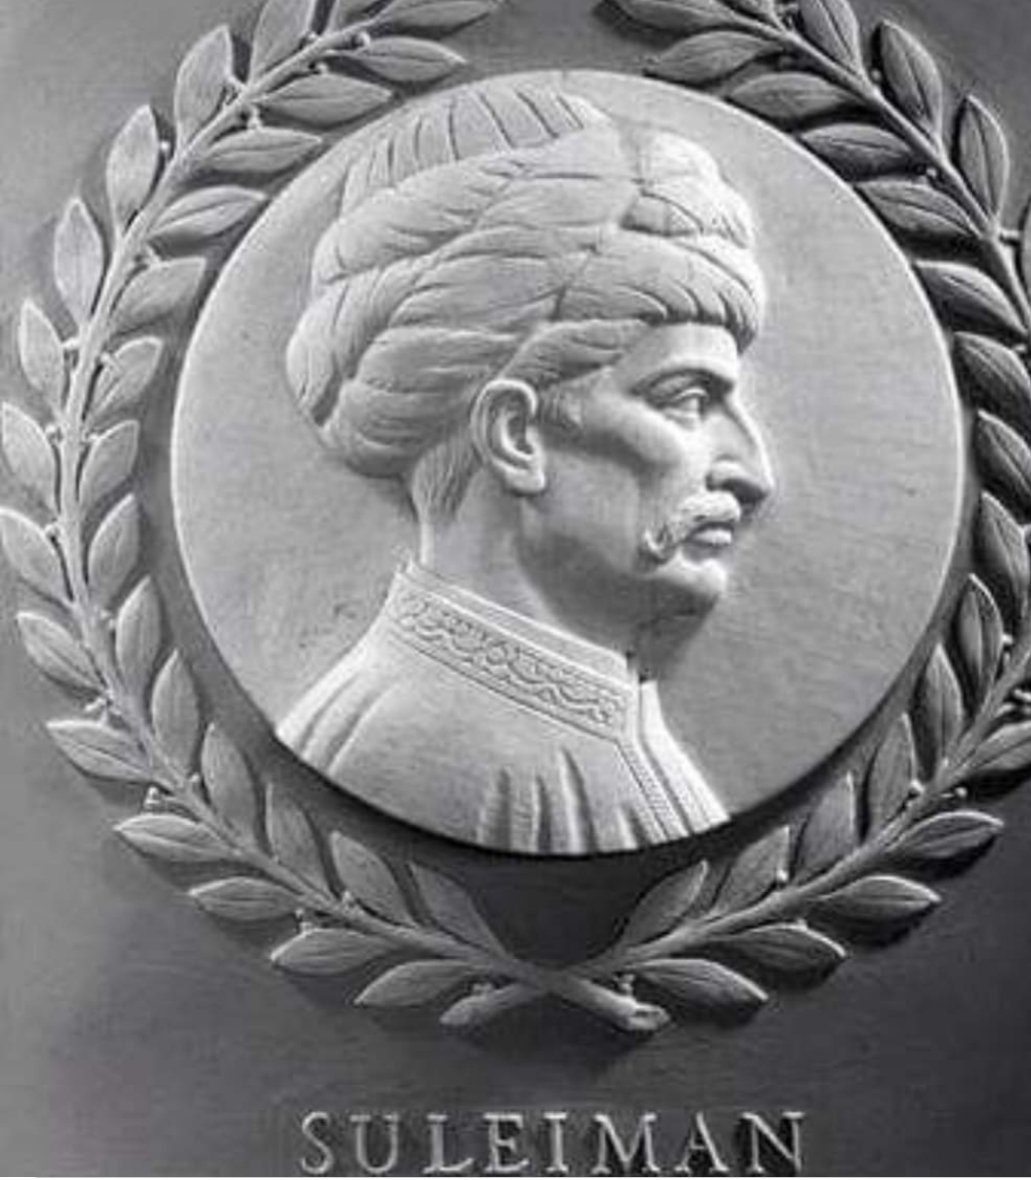 abd kongre binasında tarihin en büyük kanun yapıcısının portresi vardır. 
Kanuni Sultan Süleyman da bu 23 kişiden biridir. 

#KanuniSultanSüleyman